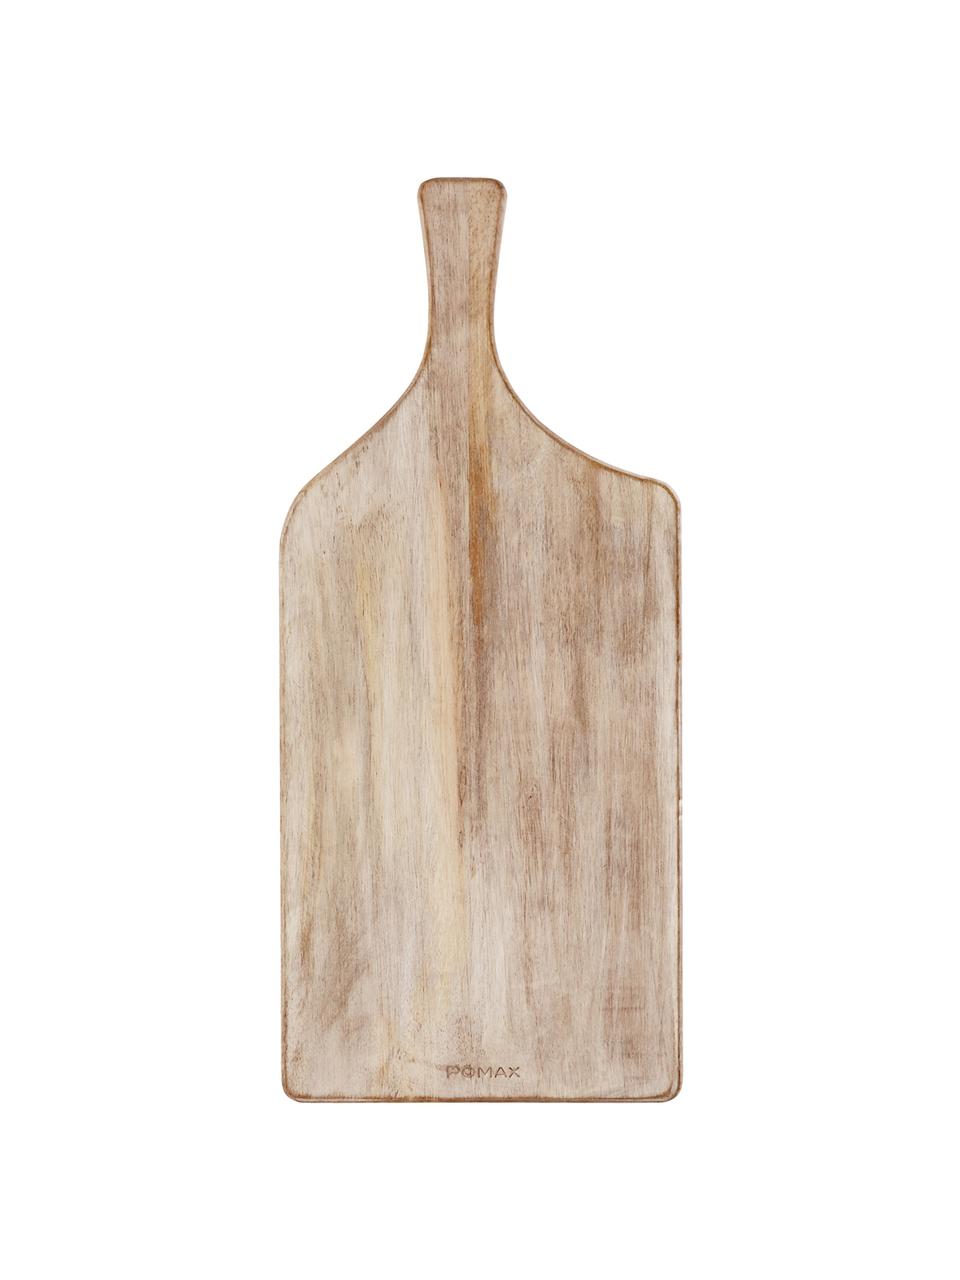 Planche à découper bois de manguier Limitless, 22 x 50 cm, Bois de manguier